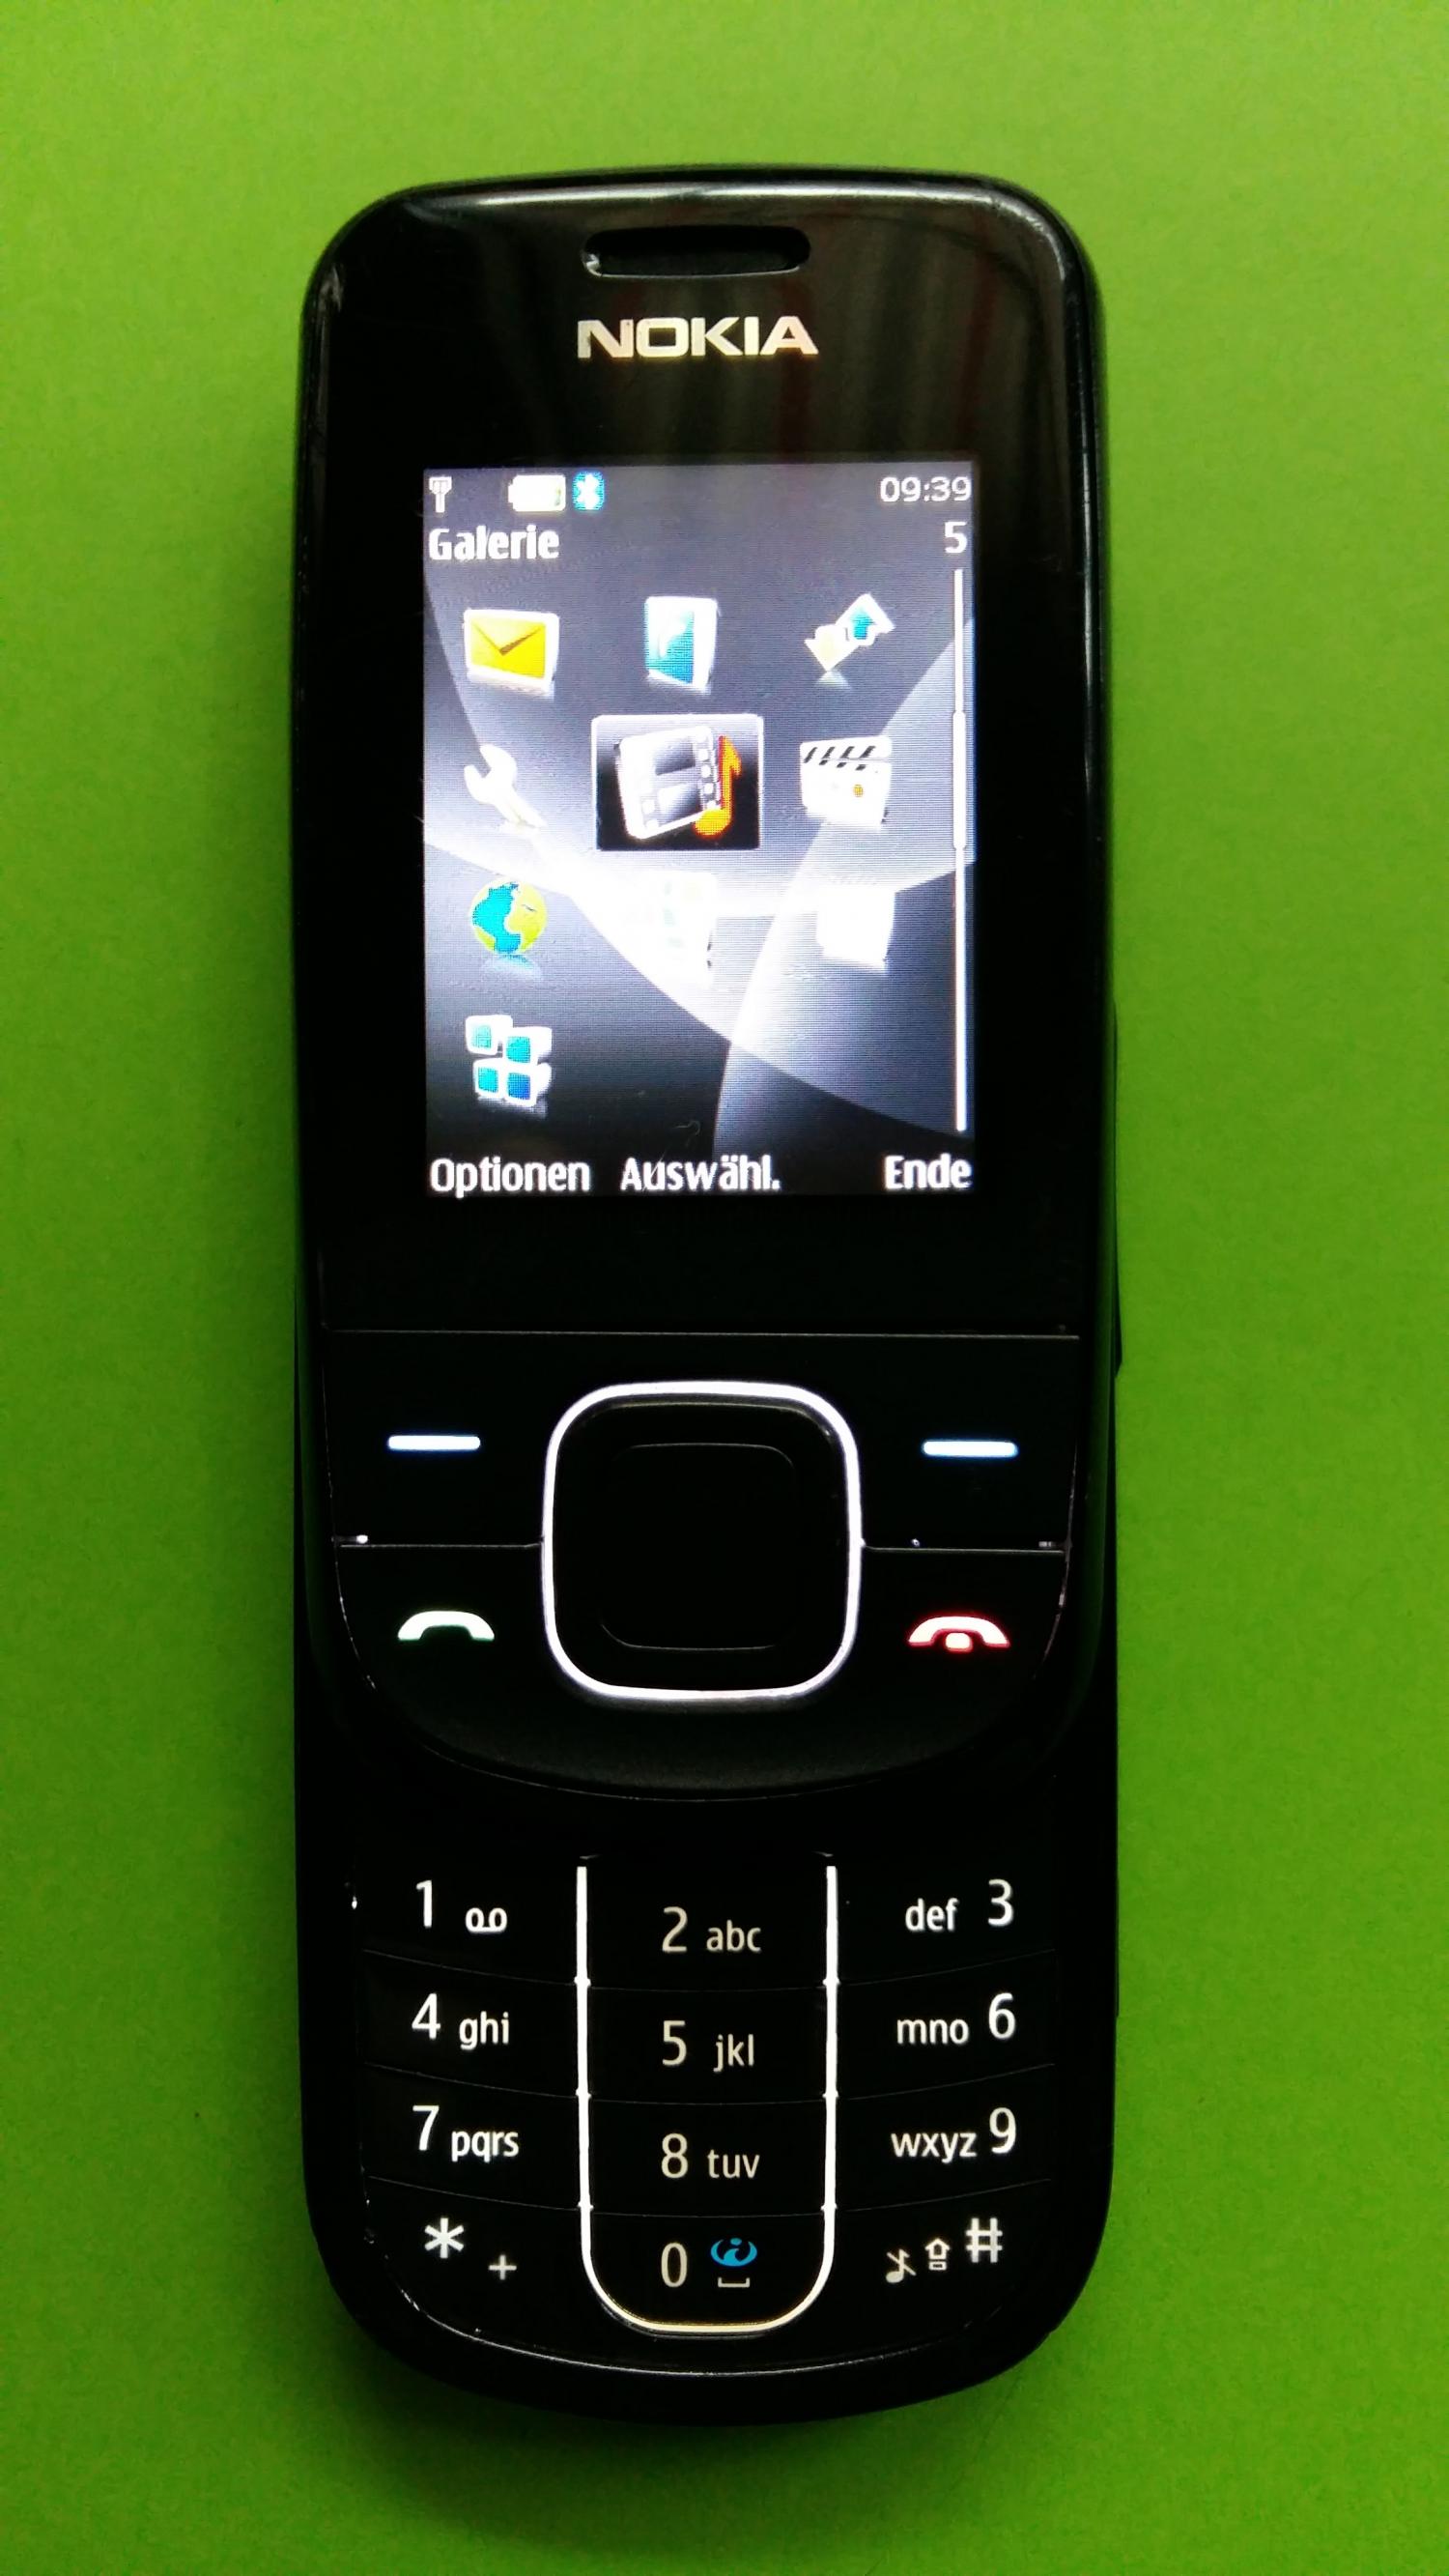 image-7316172-Nokia 3600S (2)2.jpg